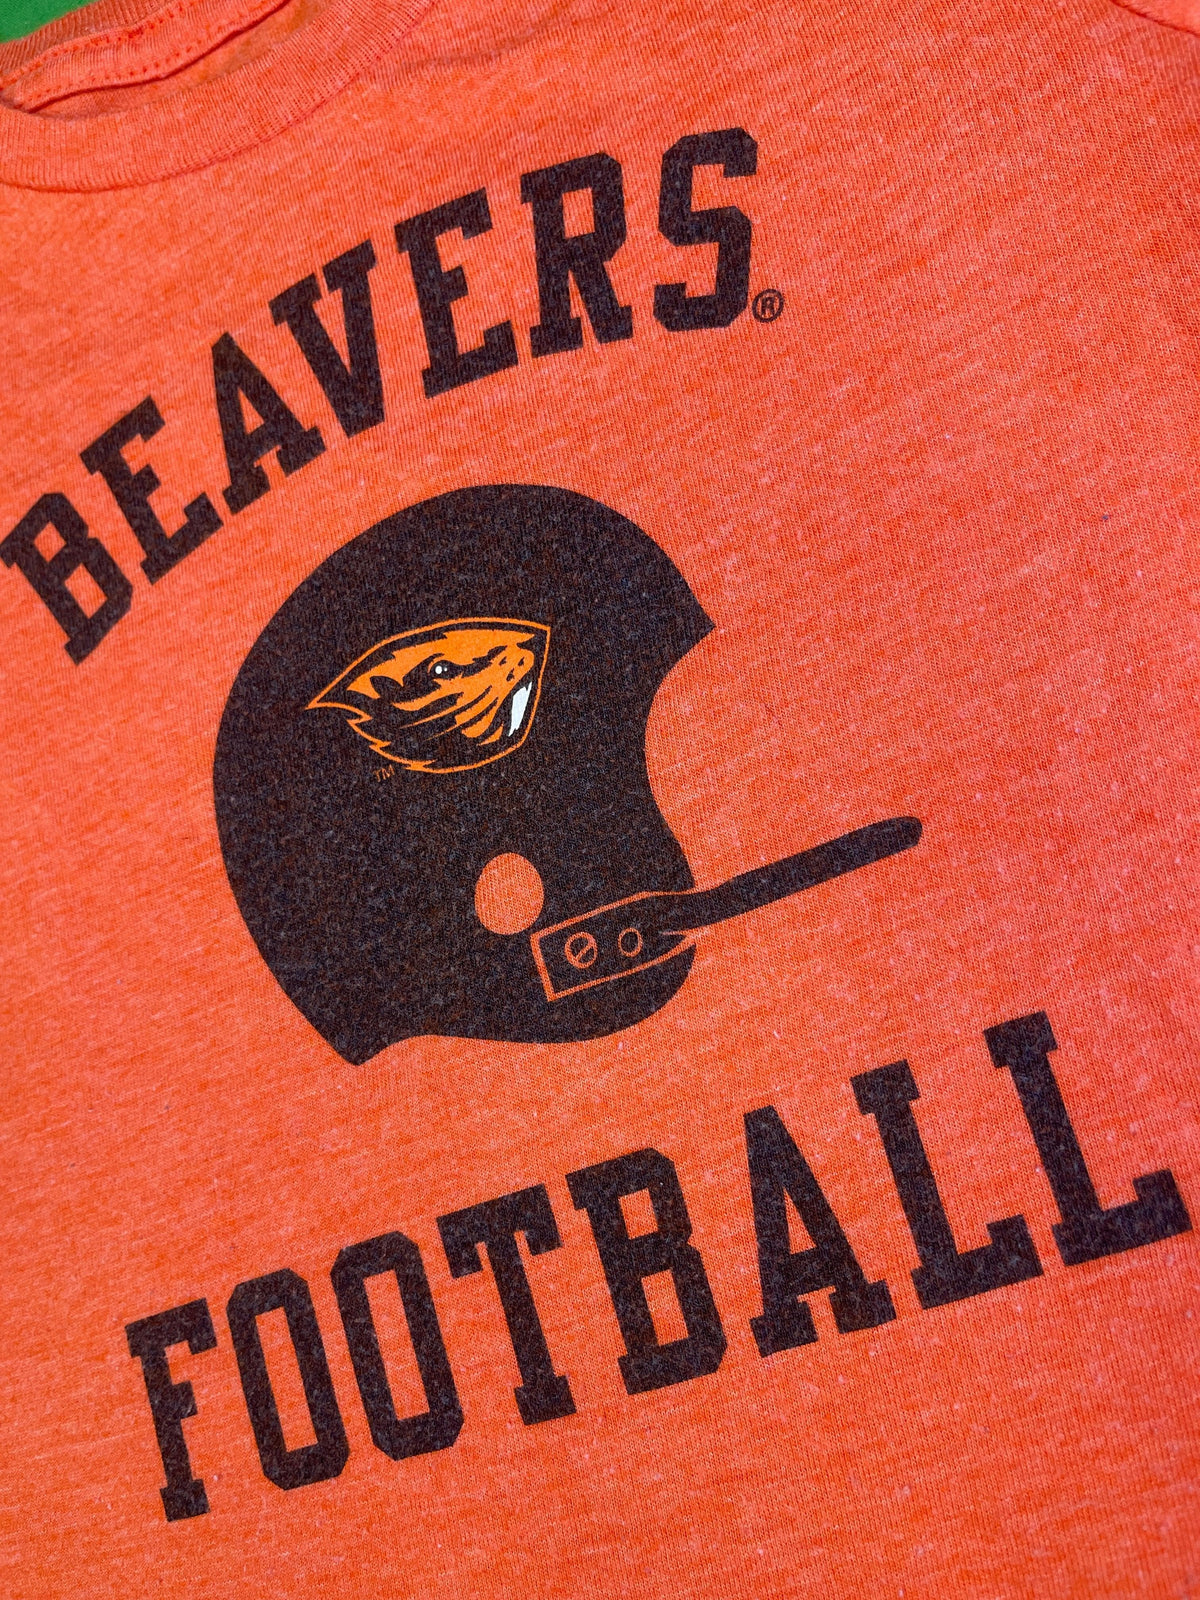 NCAA Oregon State Beavers Orange T-Shirt Toddler 3T